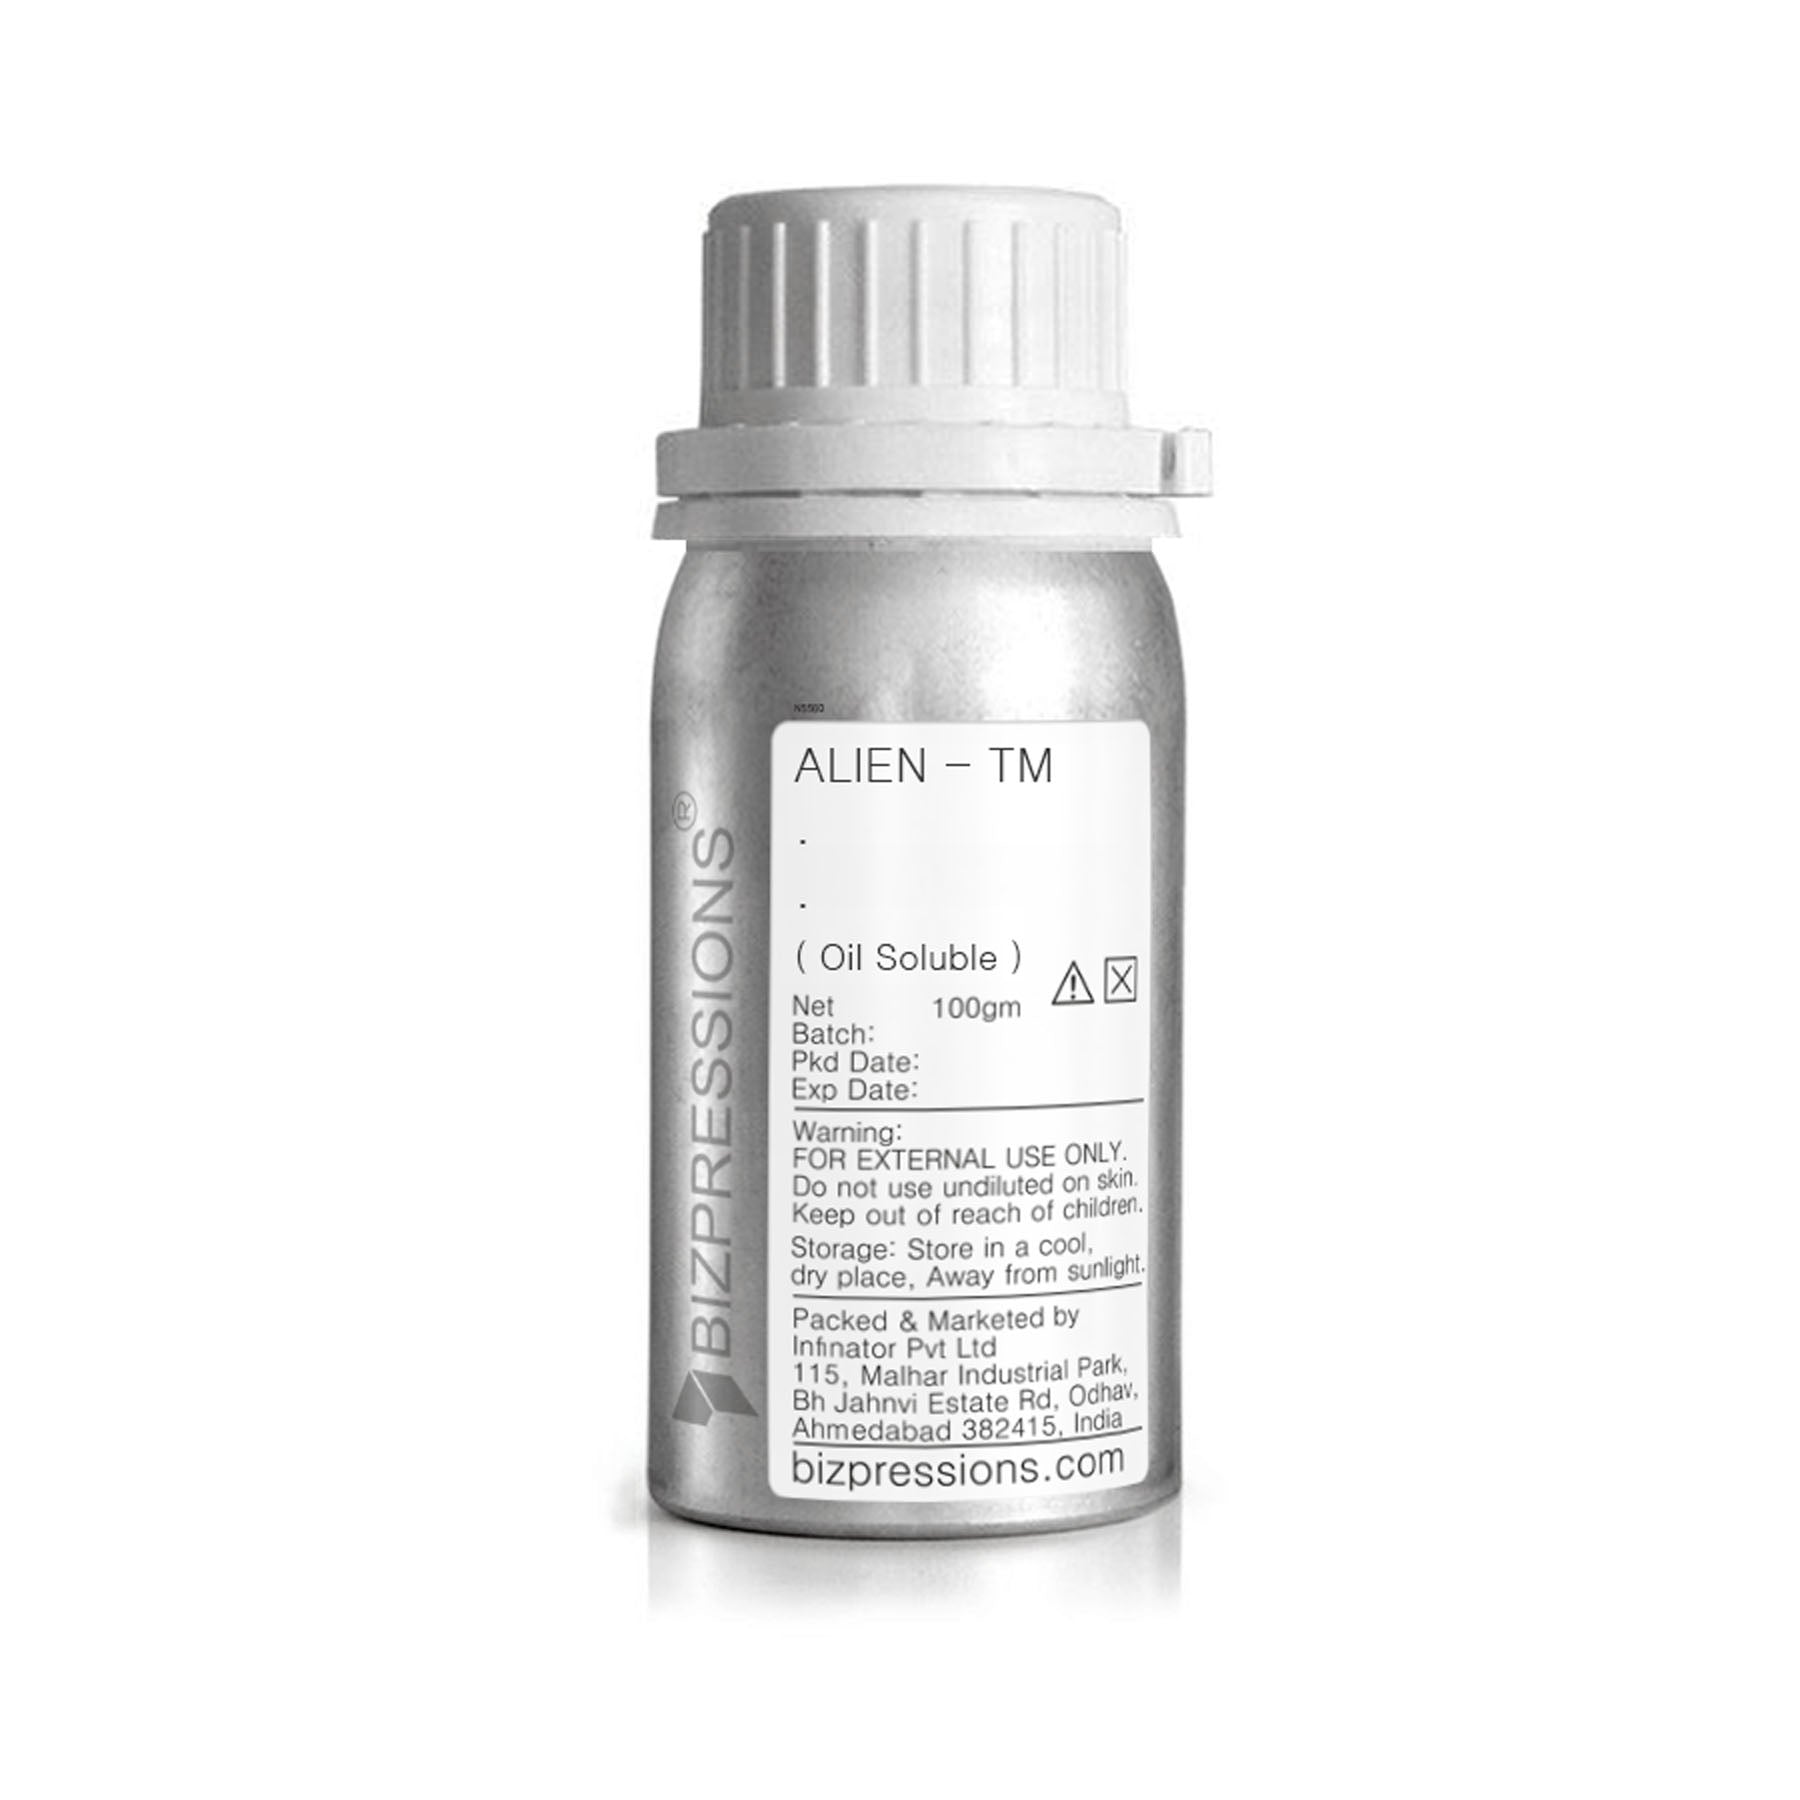 ALIEN - TM - Fragrance ( Oil Soluble ) - 100 gm